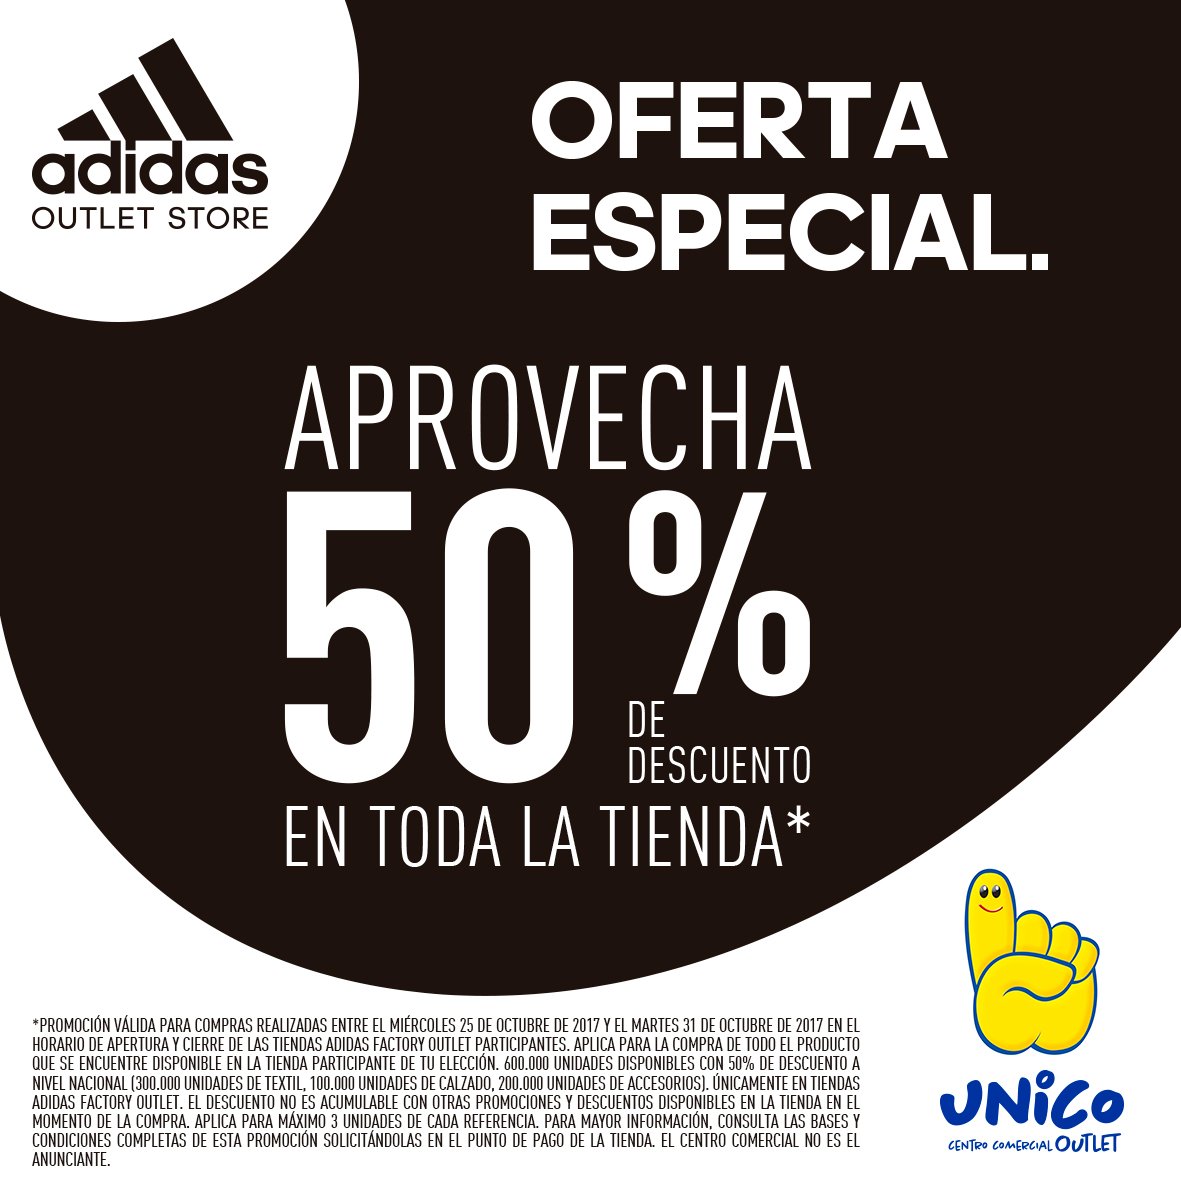 adidas outlet unico cali off 65% - www.skolanlar.nu